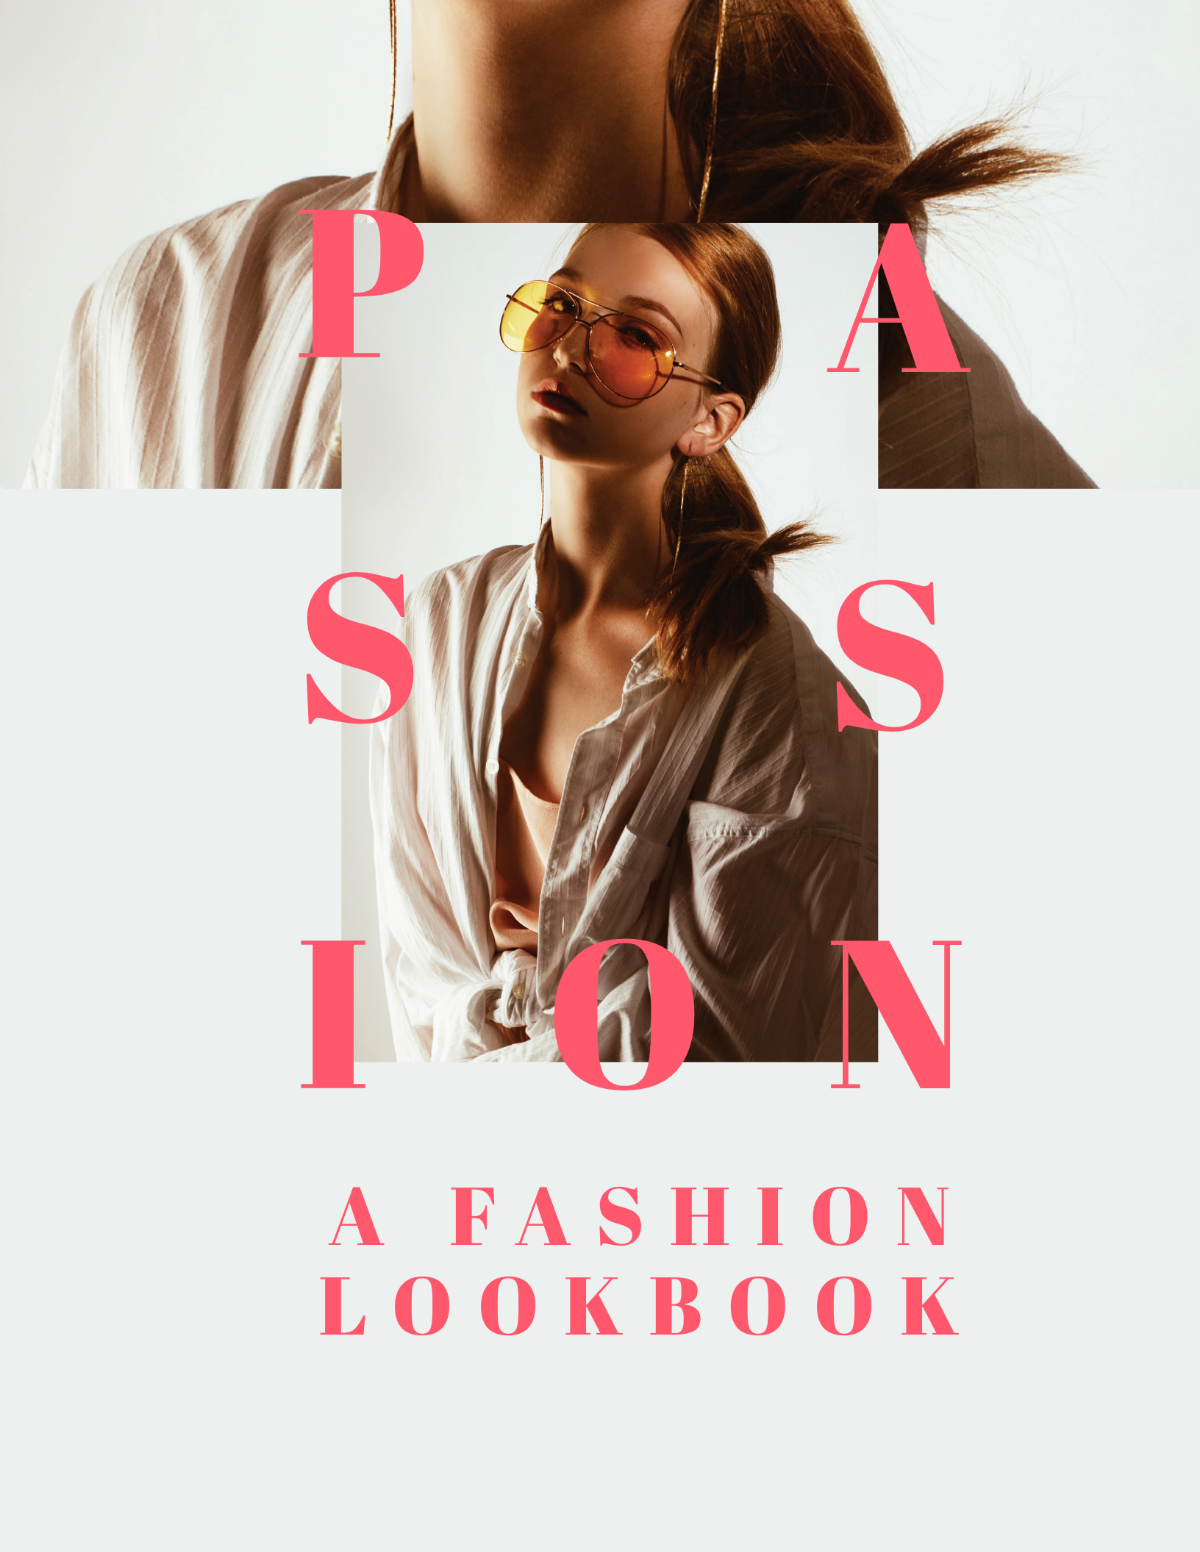 Free Fashion Company Profile Lookbook Template